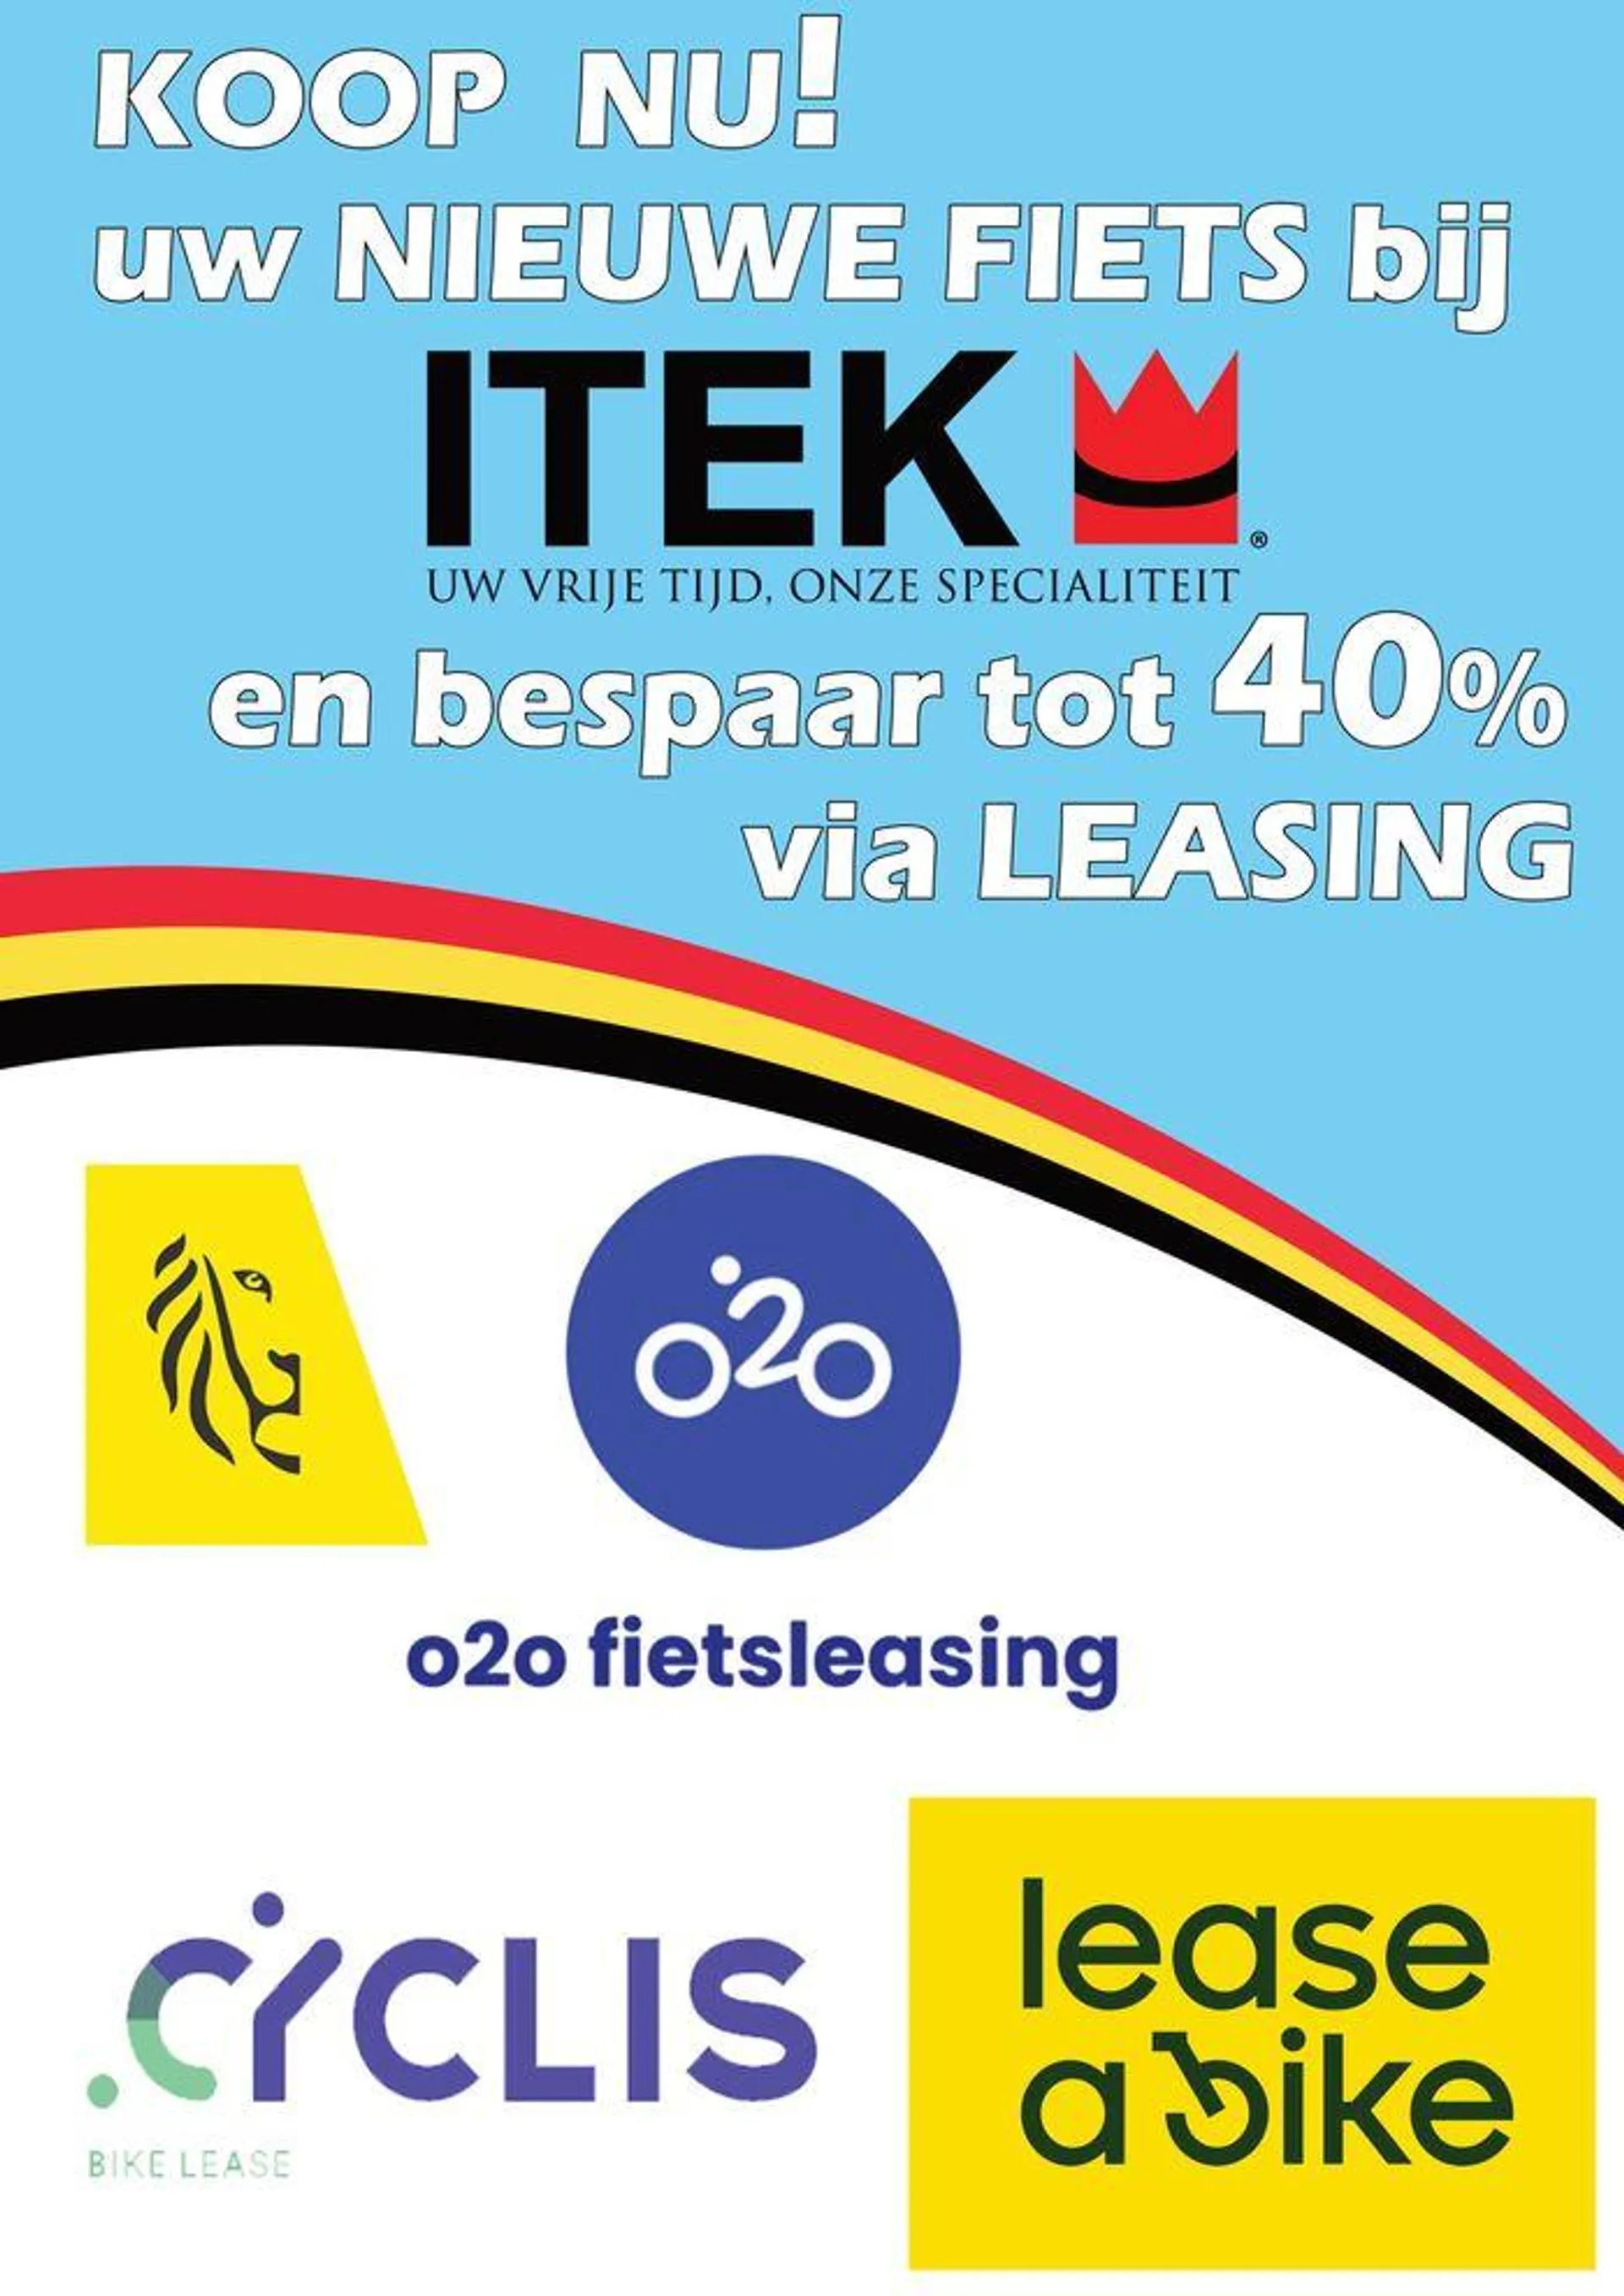 iTEK en bespaar tot 40% via Leasing - 1